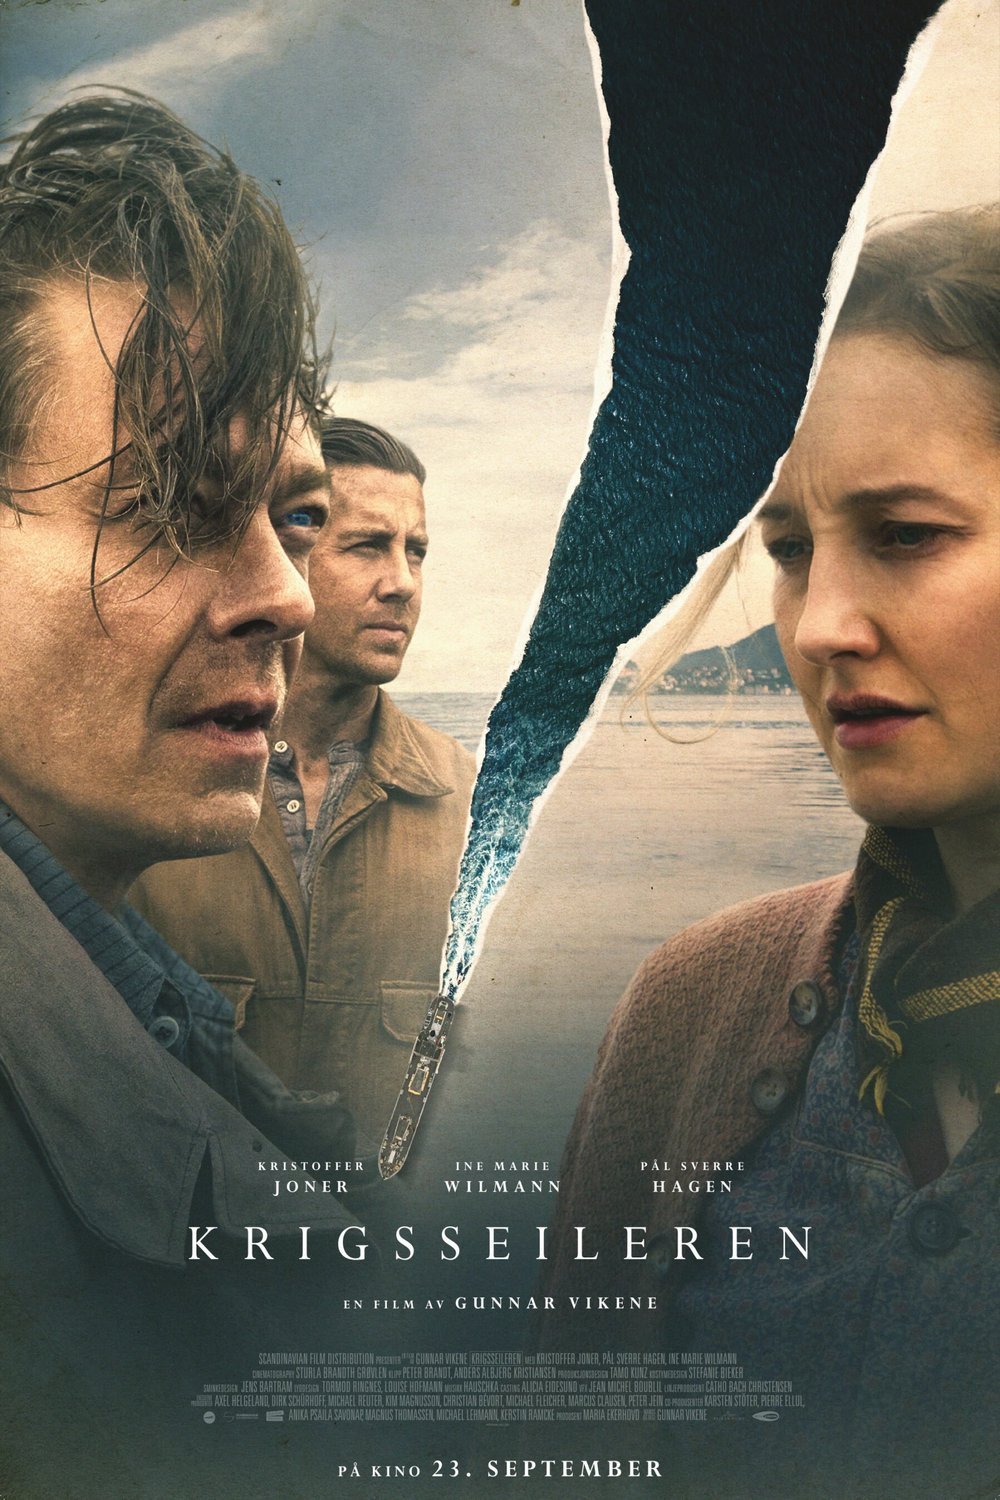 Norwegian poster of the movie Krigsseileren